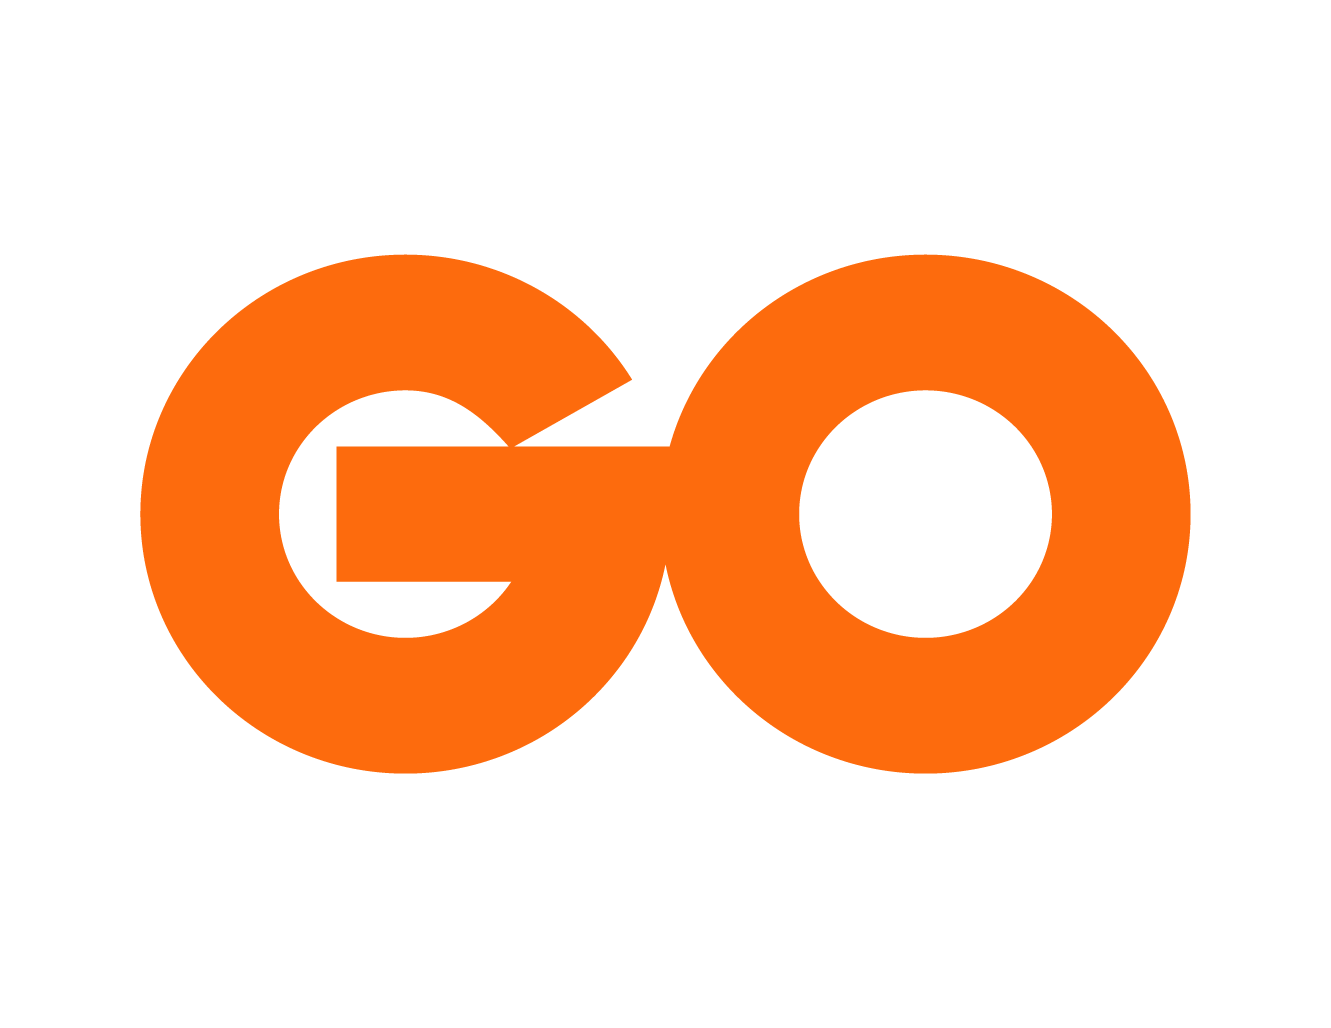 Go Logo - Press Kit